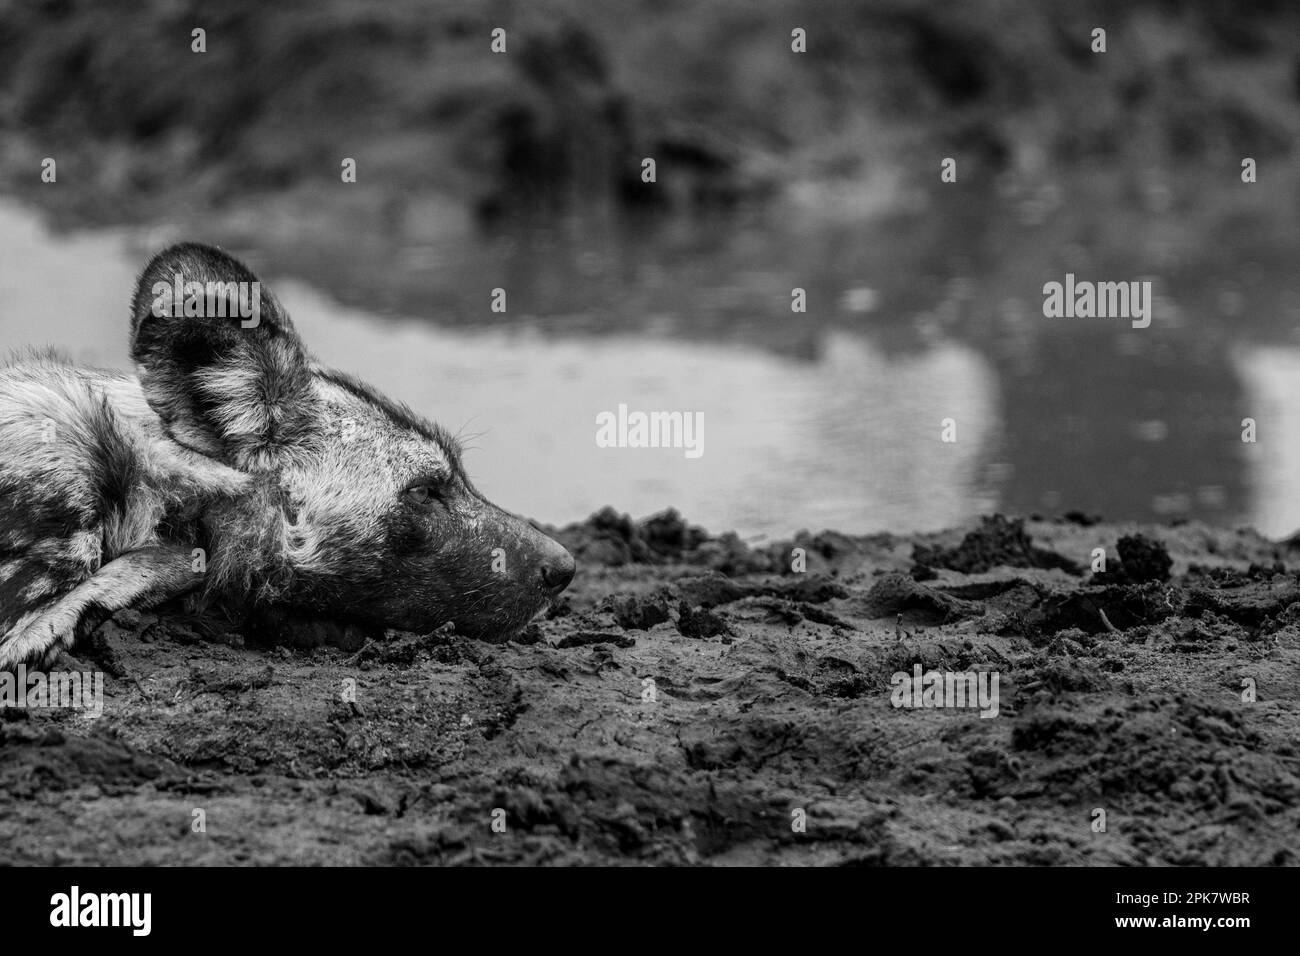 Primo piano di un cane selvatico, Licaon pictus, sdraiato accanto ad una diga, profilo laterale. In bianco e nero. Foto Stock